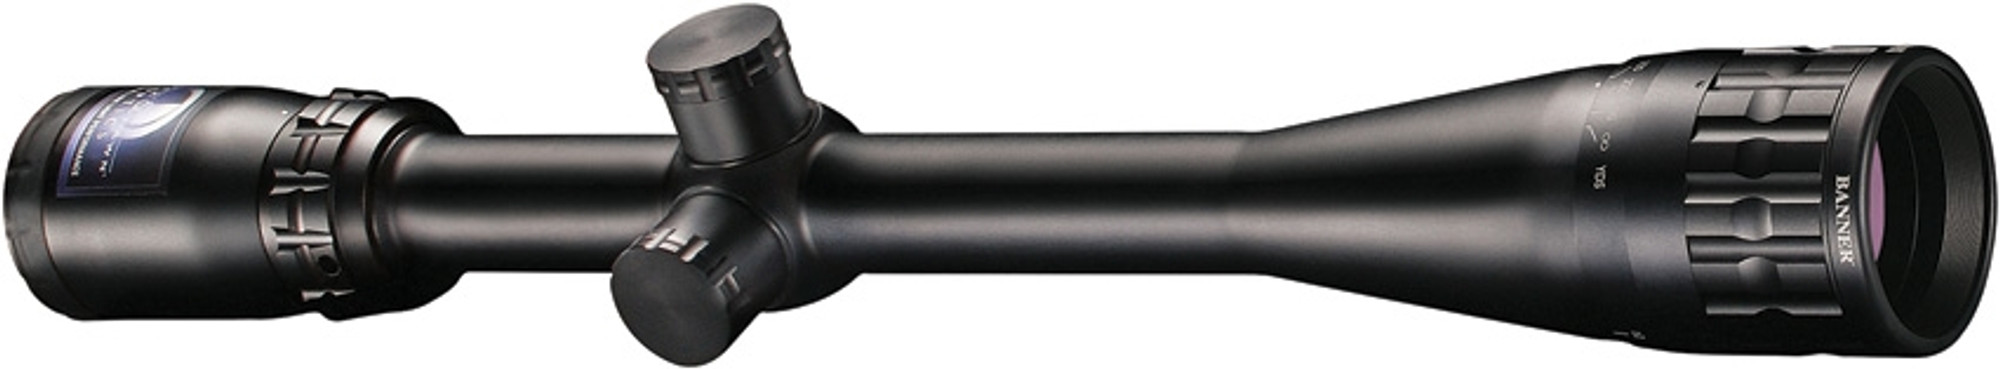 Banner 6-24x40mm MilDot Scope